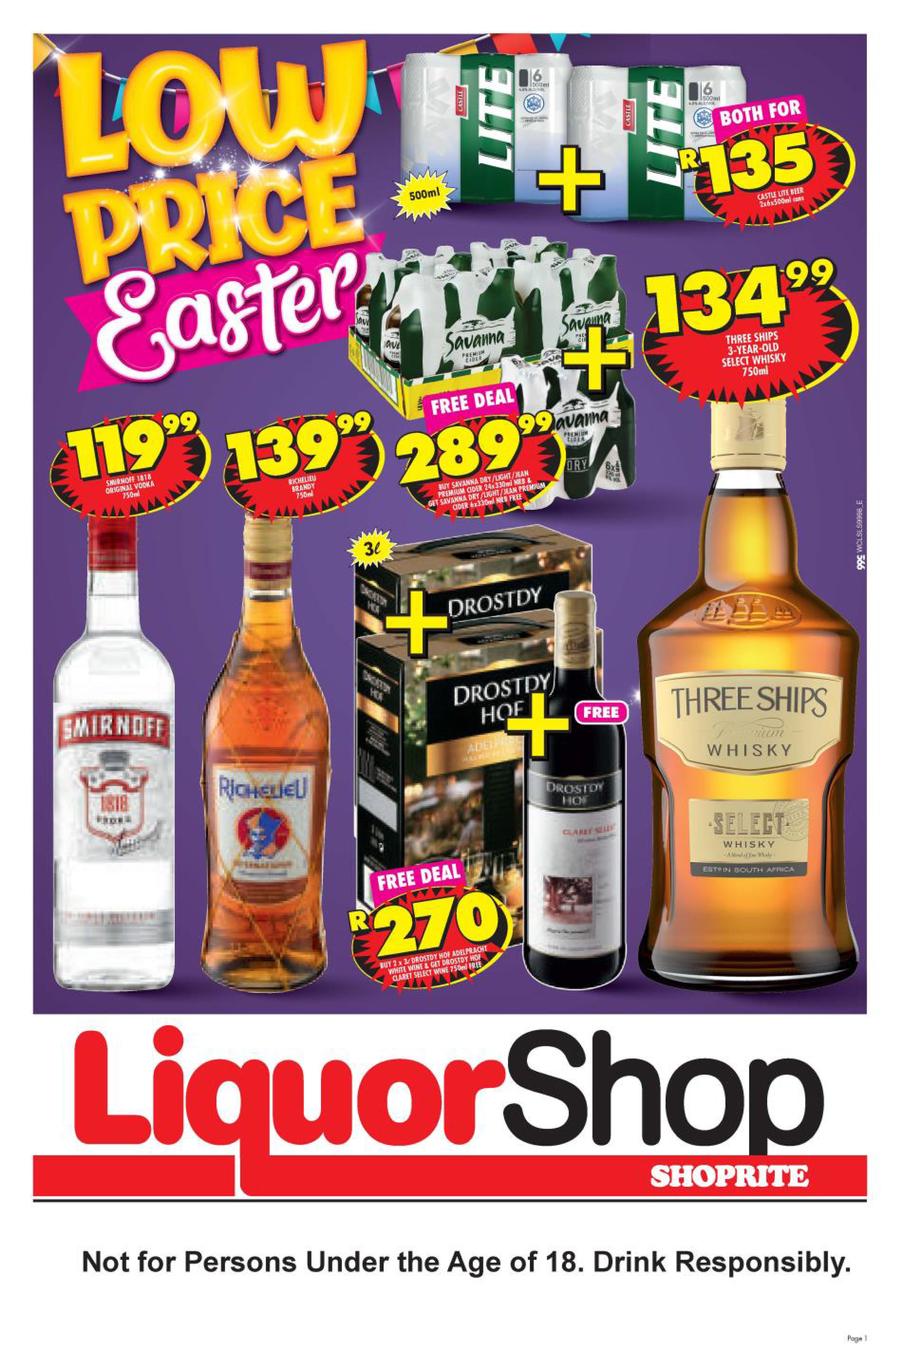 Shoprite Western Cape Liquor Shop 24 March 13 April 2020 Www Guzzle Co Za